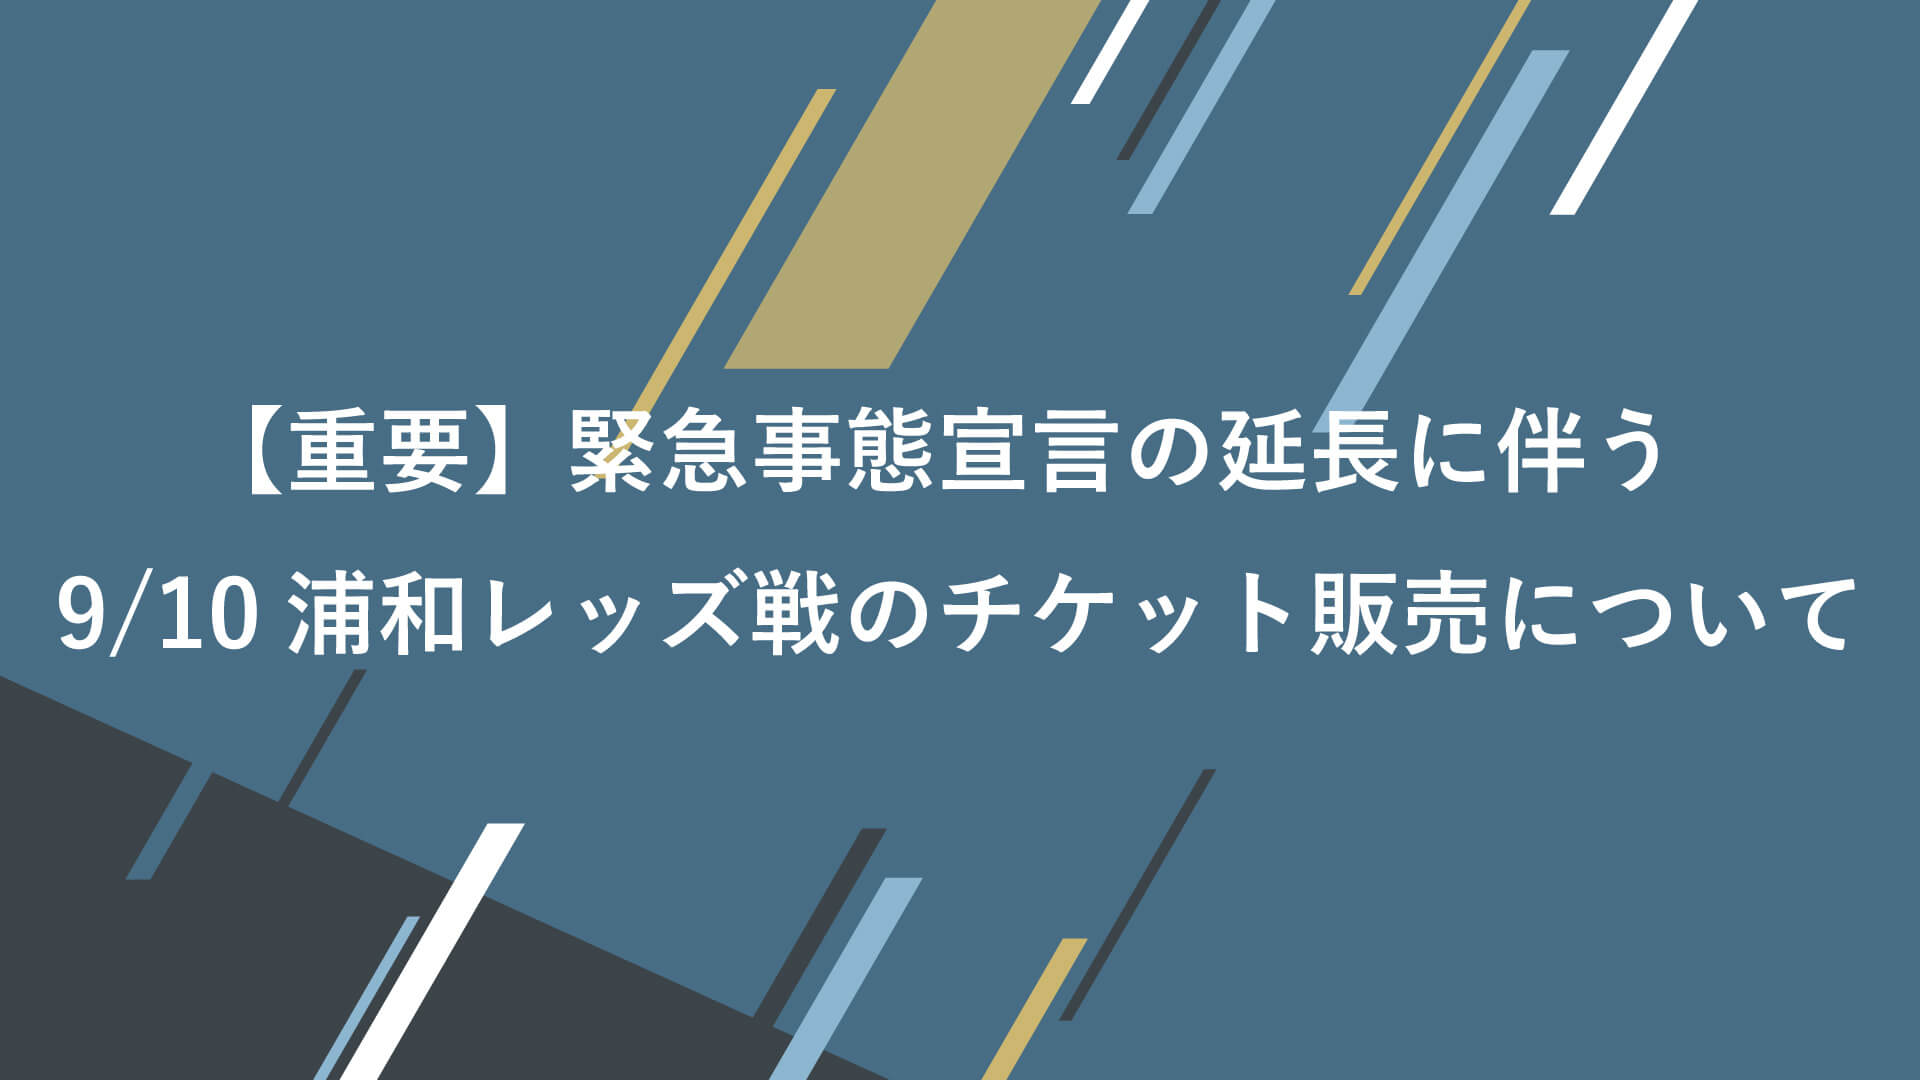 重要 緊急事態宣言の延長に伴う9 10浦和レッズ戦のチケット販売について 横浜fcオフィシャルウェブサイト